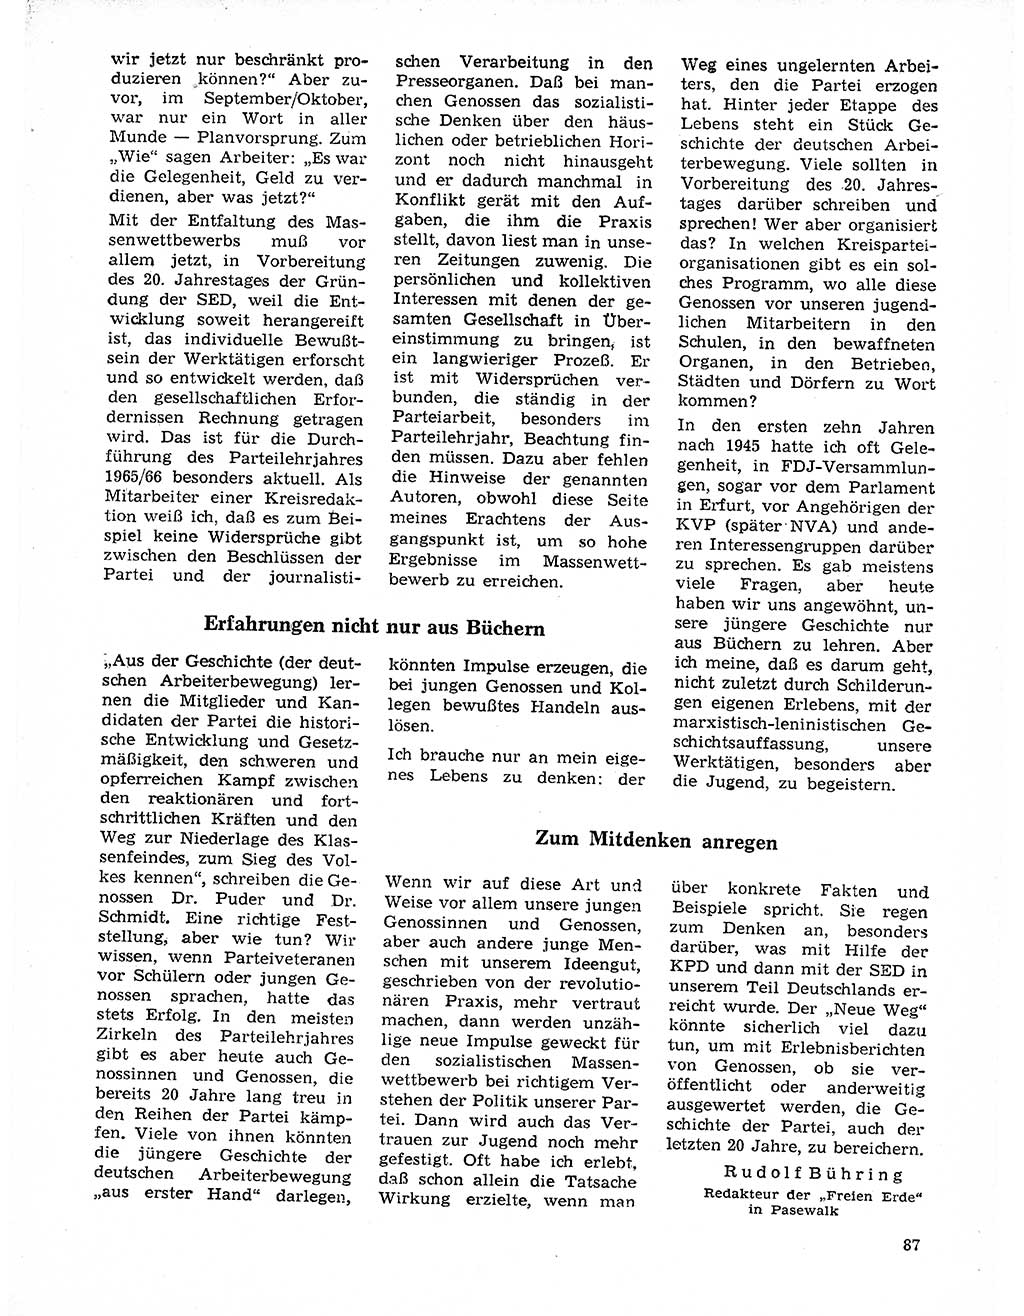 Neuer Weg (NW), Organ des Zentralkomitees (ZK) der SED (Sozialistische Einheitspartei Deutschlands) für Fragen des Parteilebens, 21. Jahrgang [Deutsche Demokratische Republik (DDR)] 1966, Seite 87 (NW ZK SED DDR 1966, S. 87)